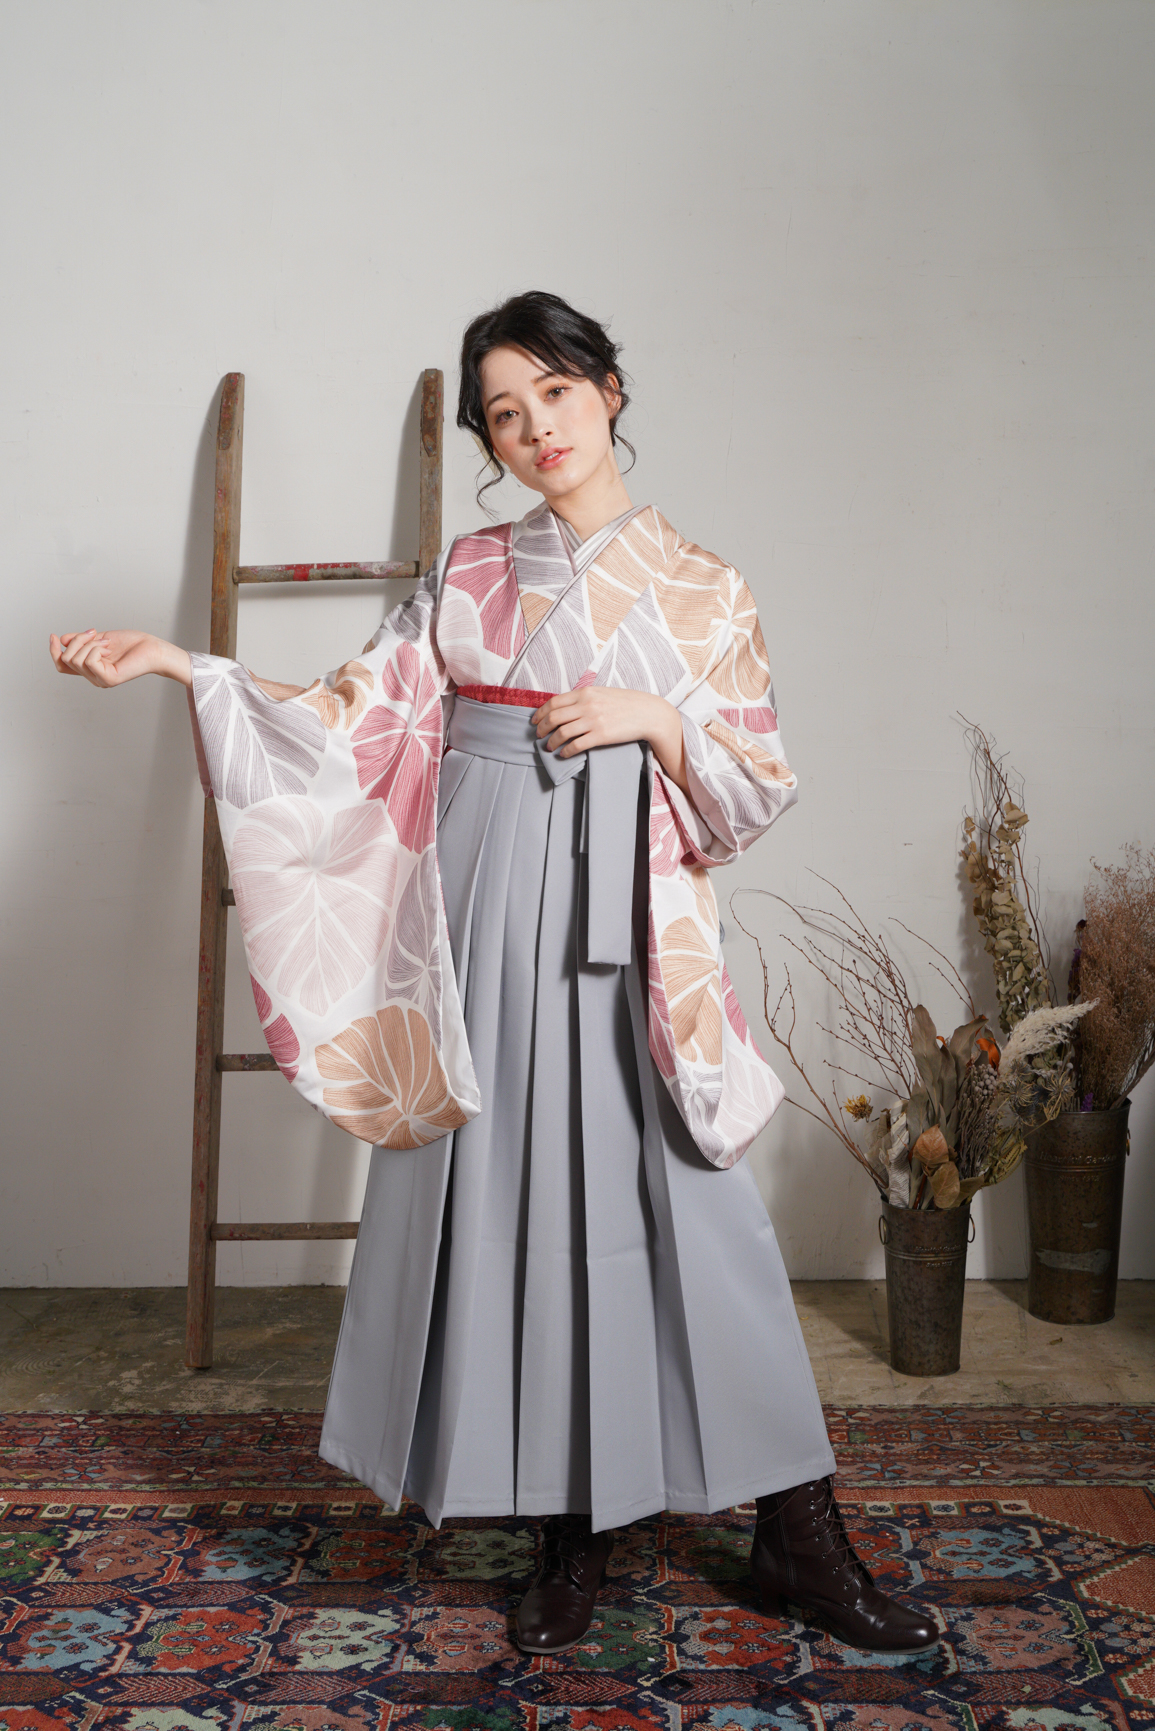 ラフィネモカ（Raffine Mocha）ブランドの、白地にモダンな淡色の花柄の二尺袖と、グレーの袴の女性用卒業式袴を着用した全身写真